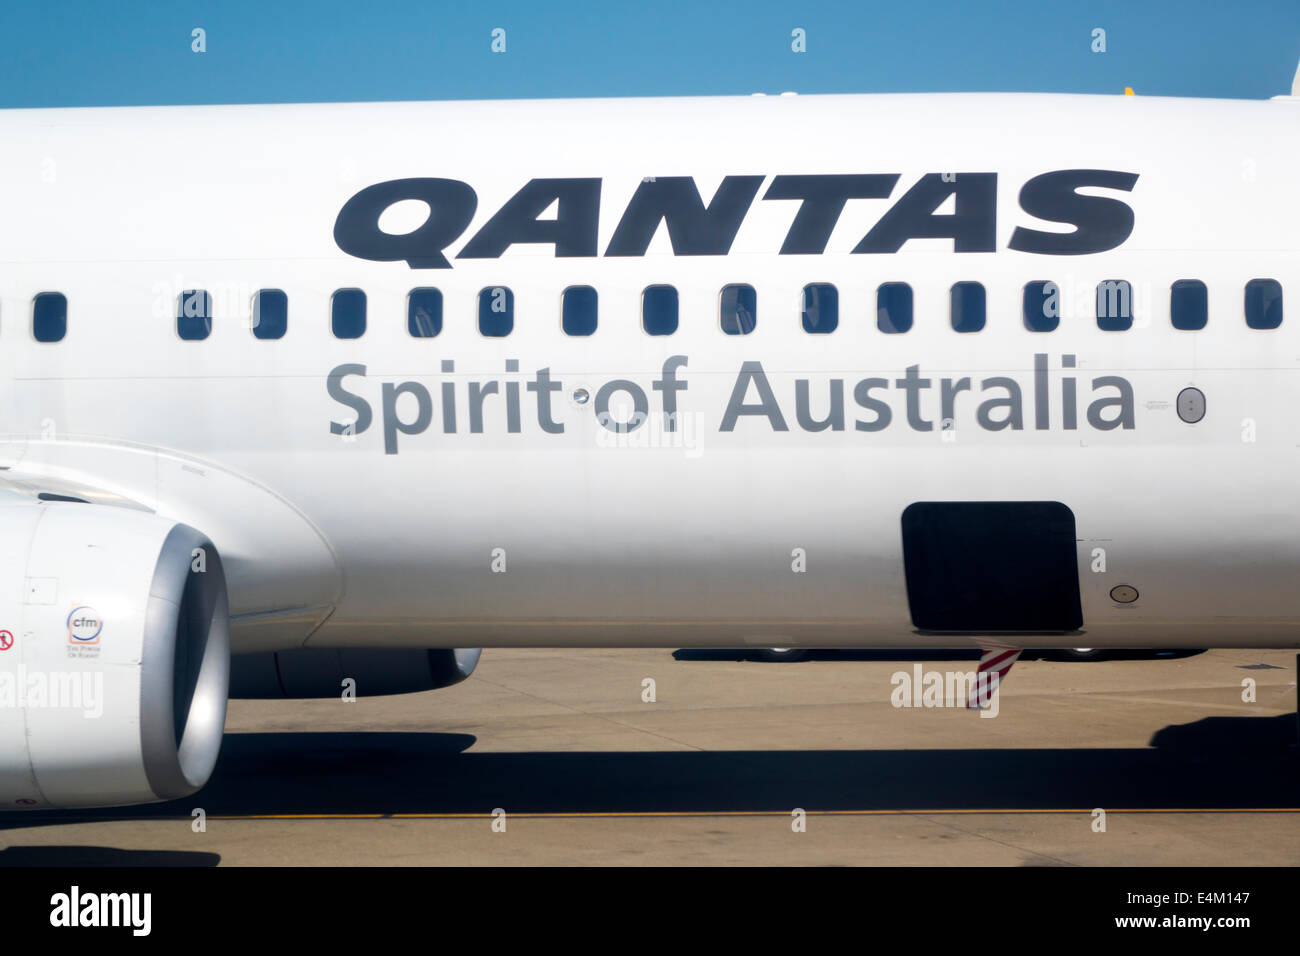 Brisbane Australie,aéroport,BNE,domestique,terminal,porte,Qantas,compagnies aériennes,tarmac,avion de ligne commercial avion avion avion avion,Spirit,Windows,AU14 Banque D'Images